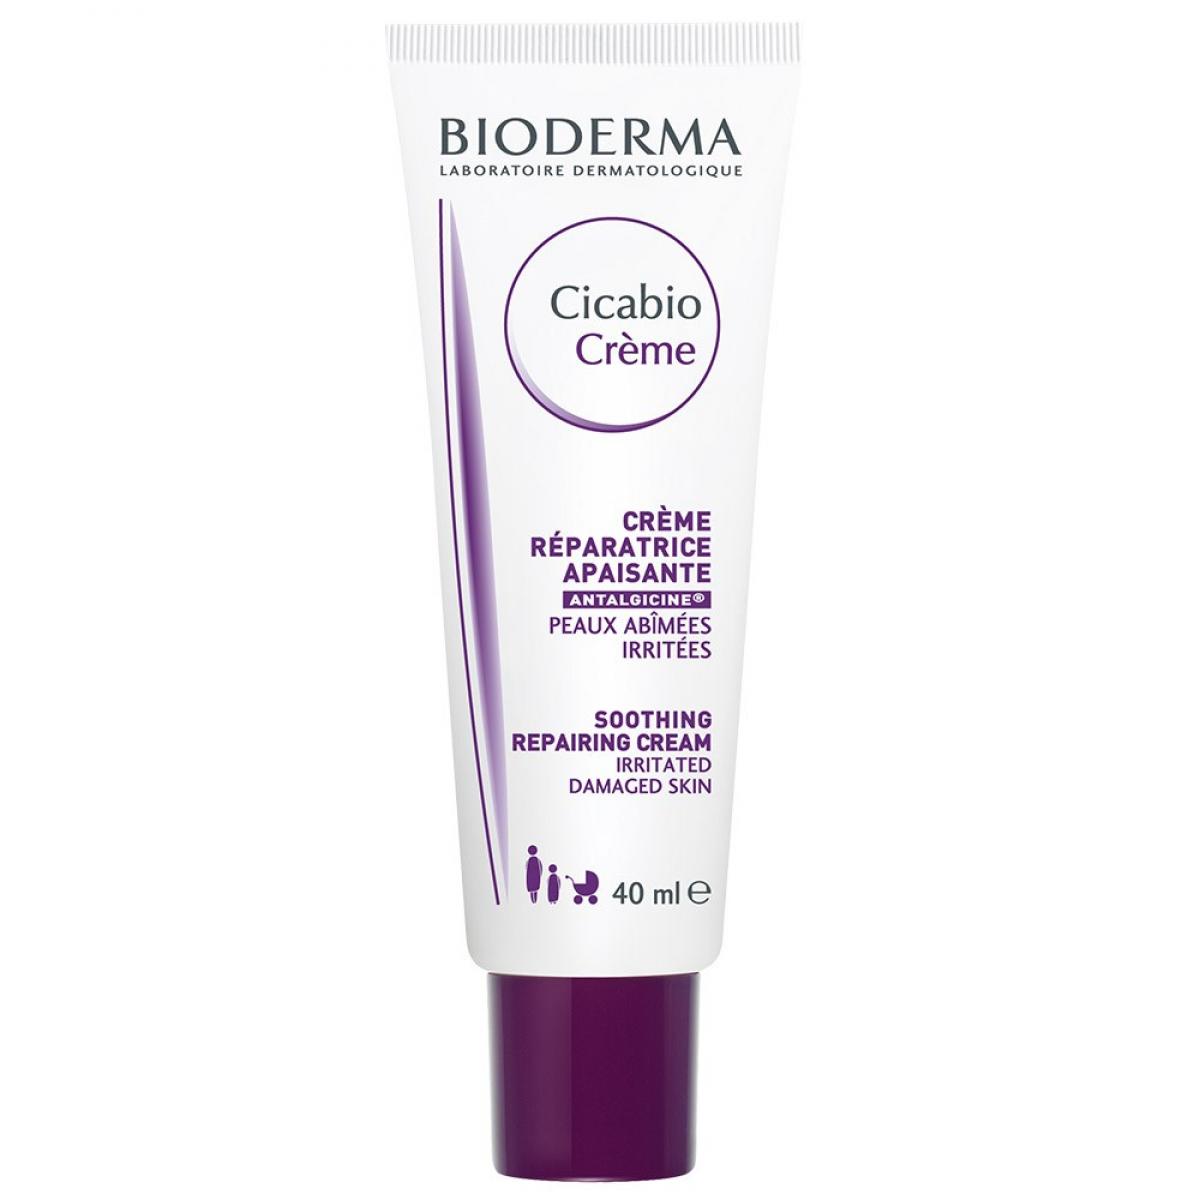 کرم ترمیم کننده و تسکین دهنده سیکابیو - Bioderma Cicabio Soothing Repairing Cream 40ml